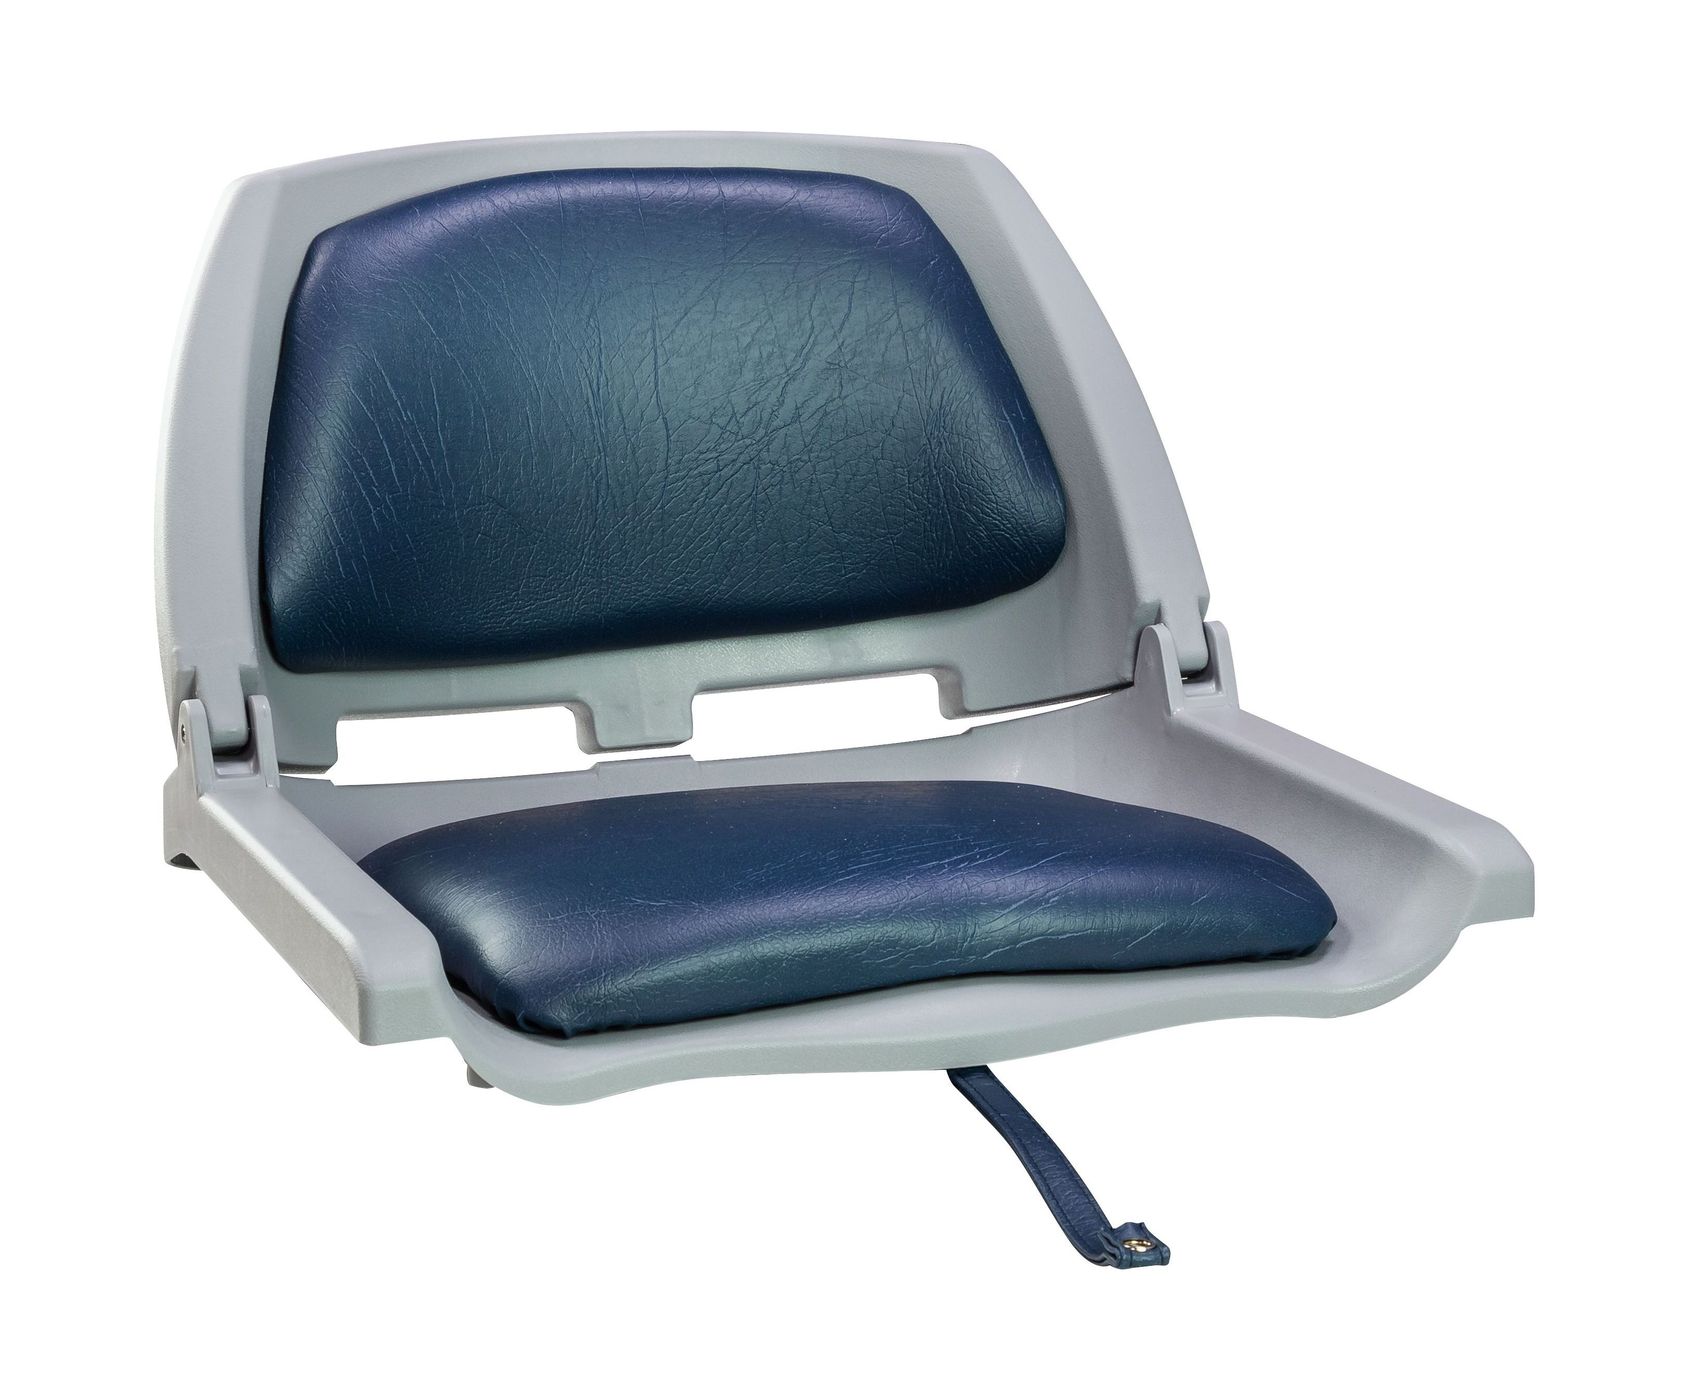 Кресло складное мягкое TRAVELER, цвет серый/синий 1061112C кресло мягкое складное обивка винил белый синий marine rocket 75259wn mr